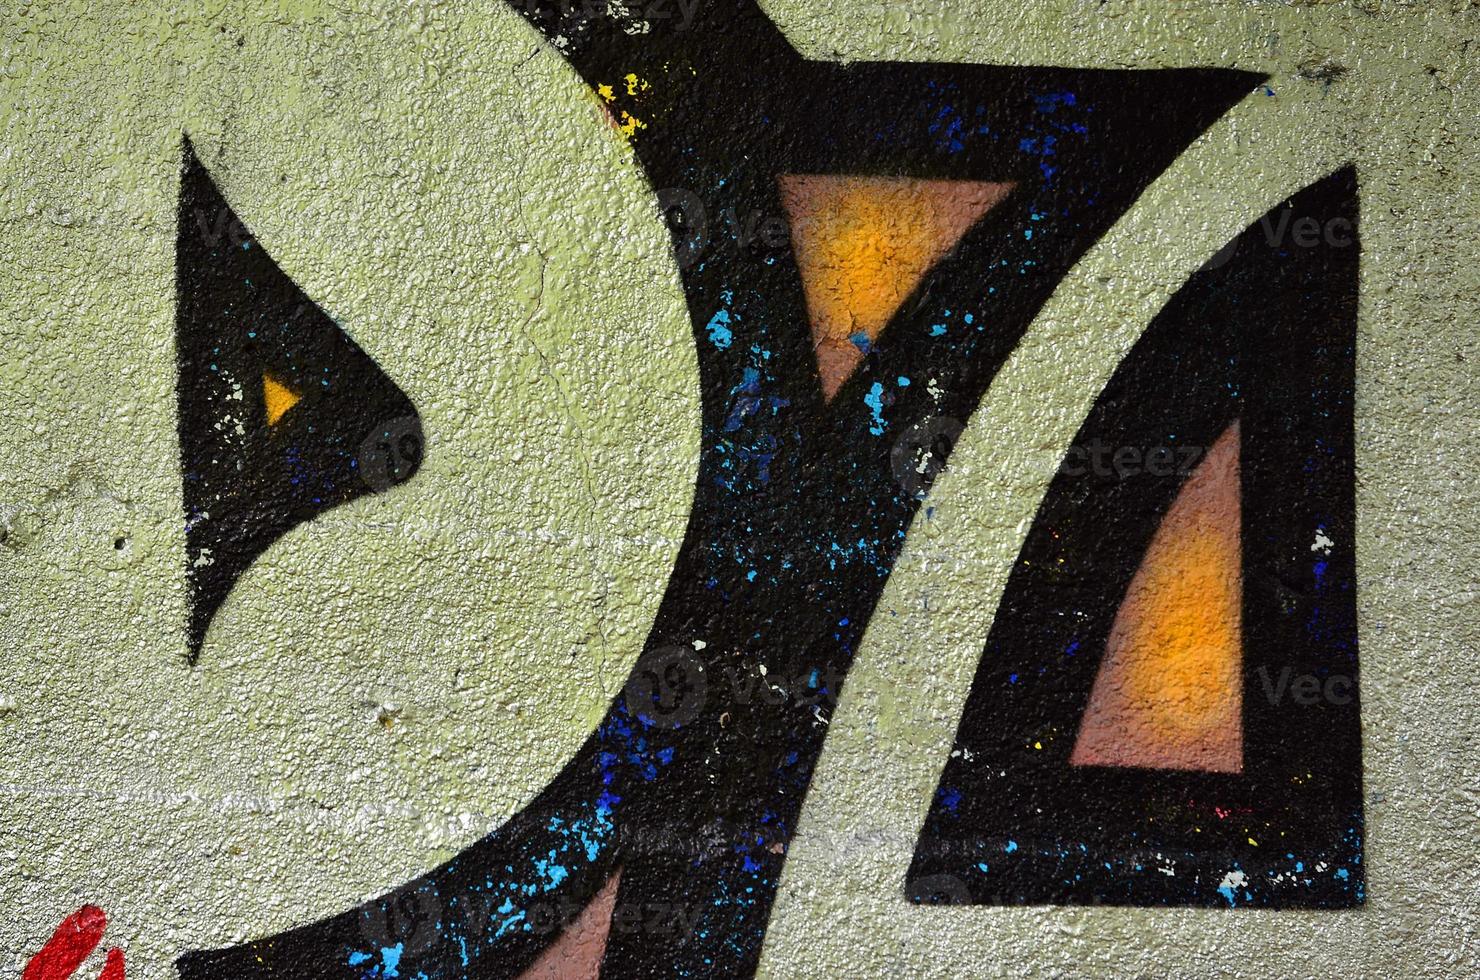 Kunst unter der Erde. schöner Streetart-Graffiti-Stil. die wand ist mit abstrakten zeichnungen hausfarbe geschmückt. moderne ikonische urbane Kultur der Straßenjugend. abstraktes stilvolles Bild an der Wand foto